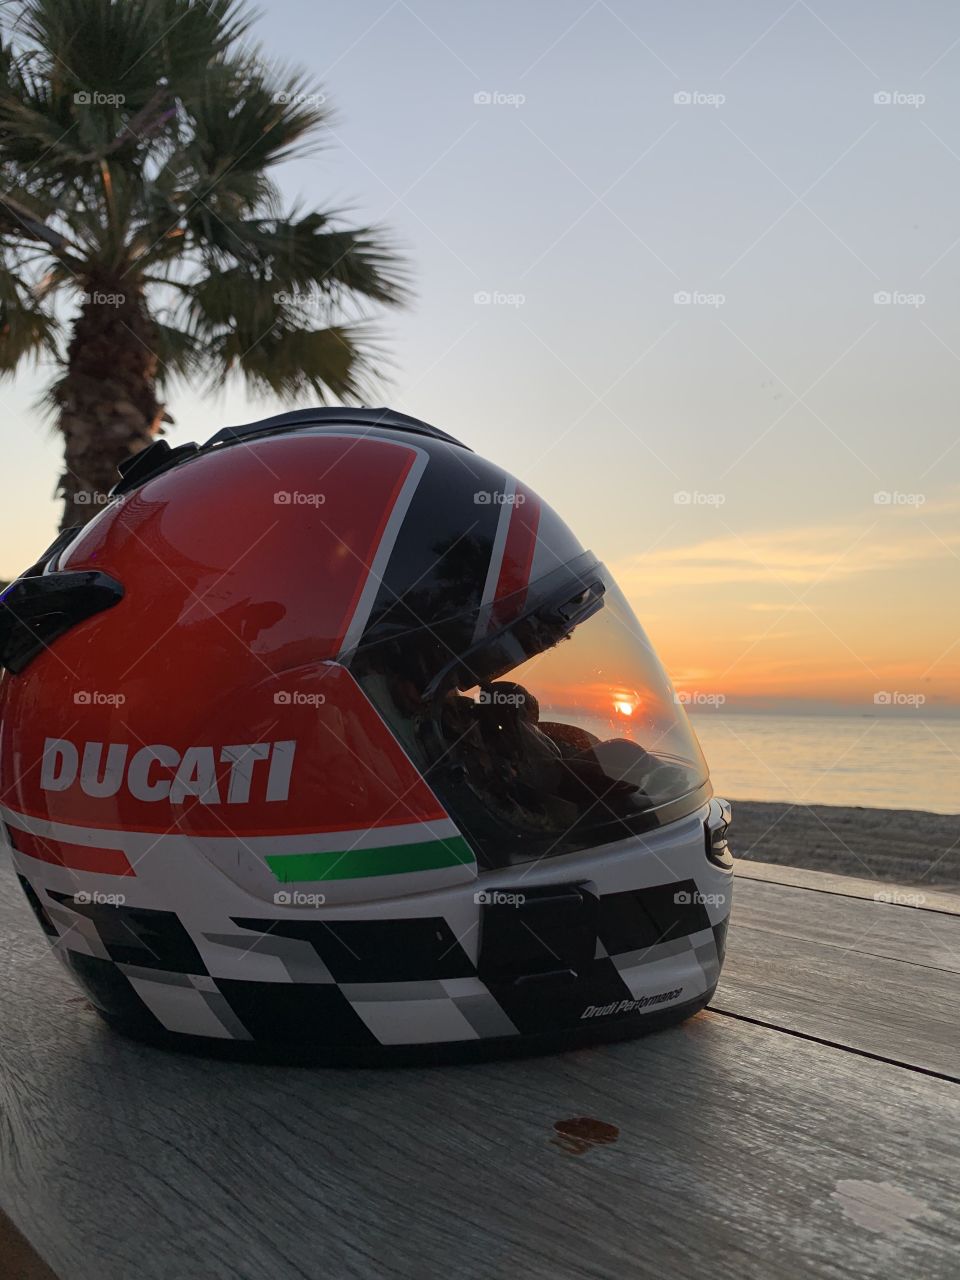 Ducati-set